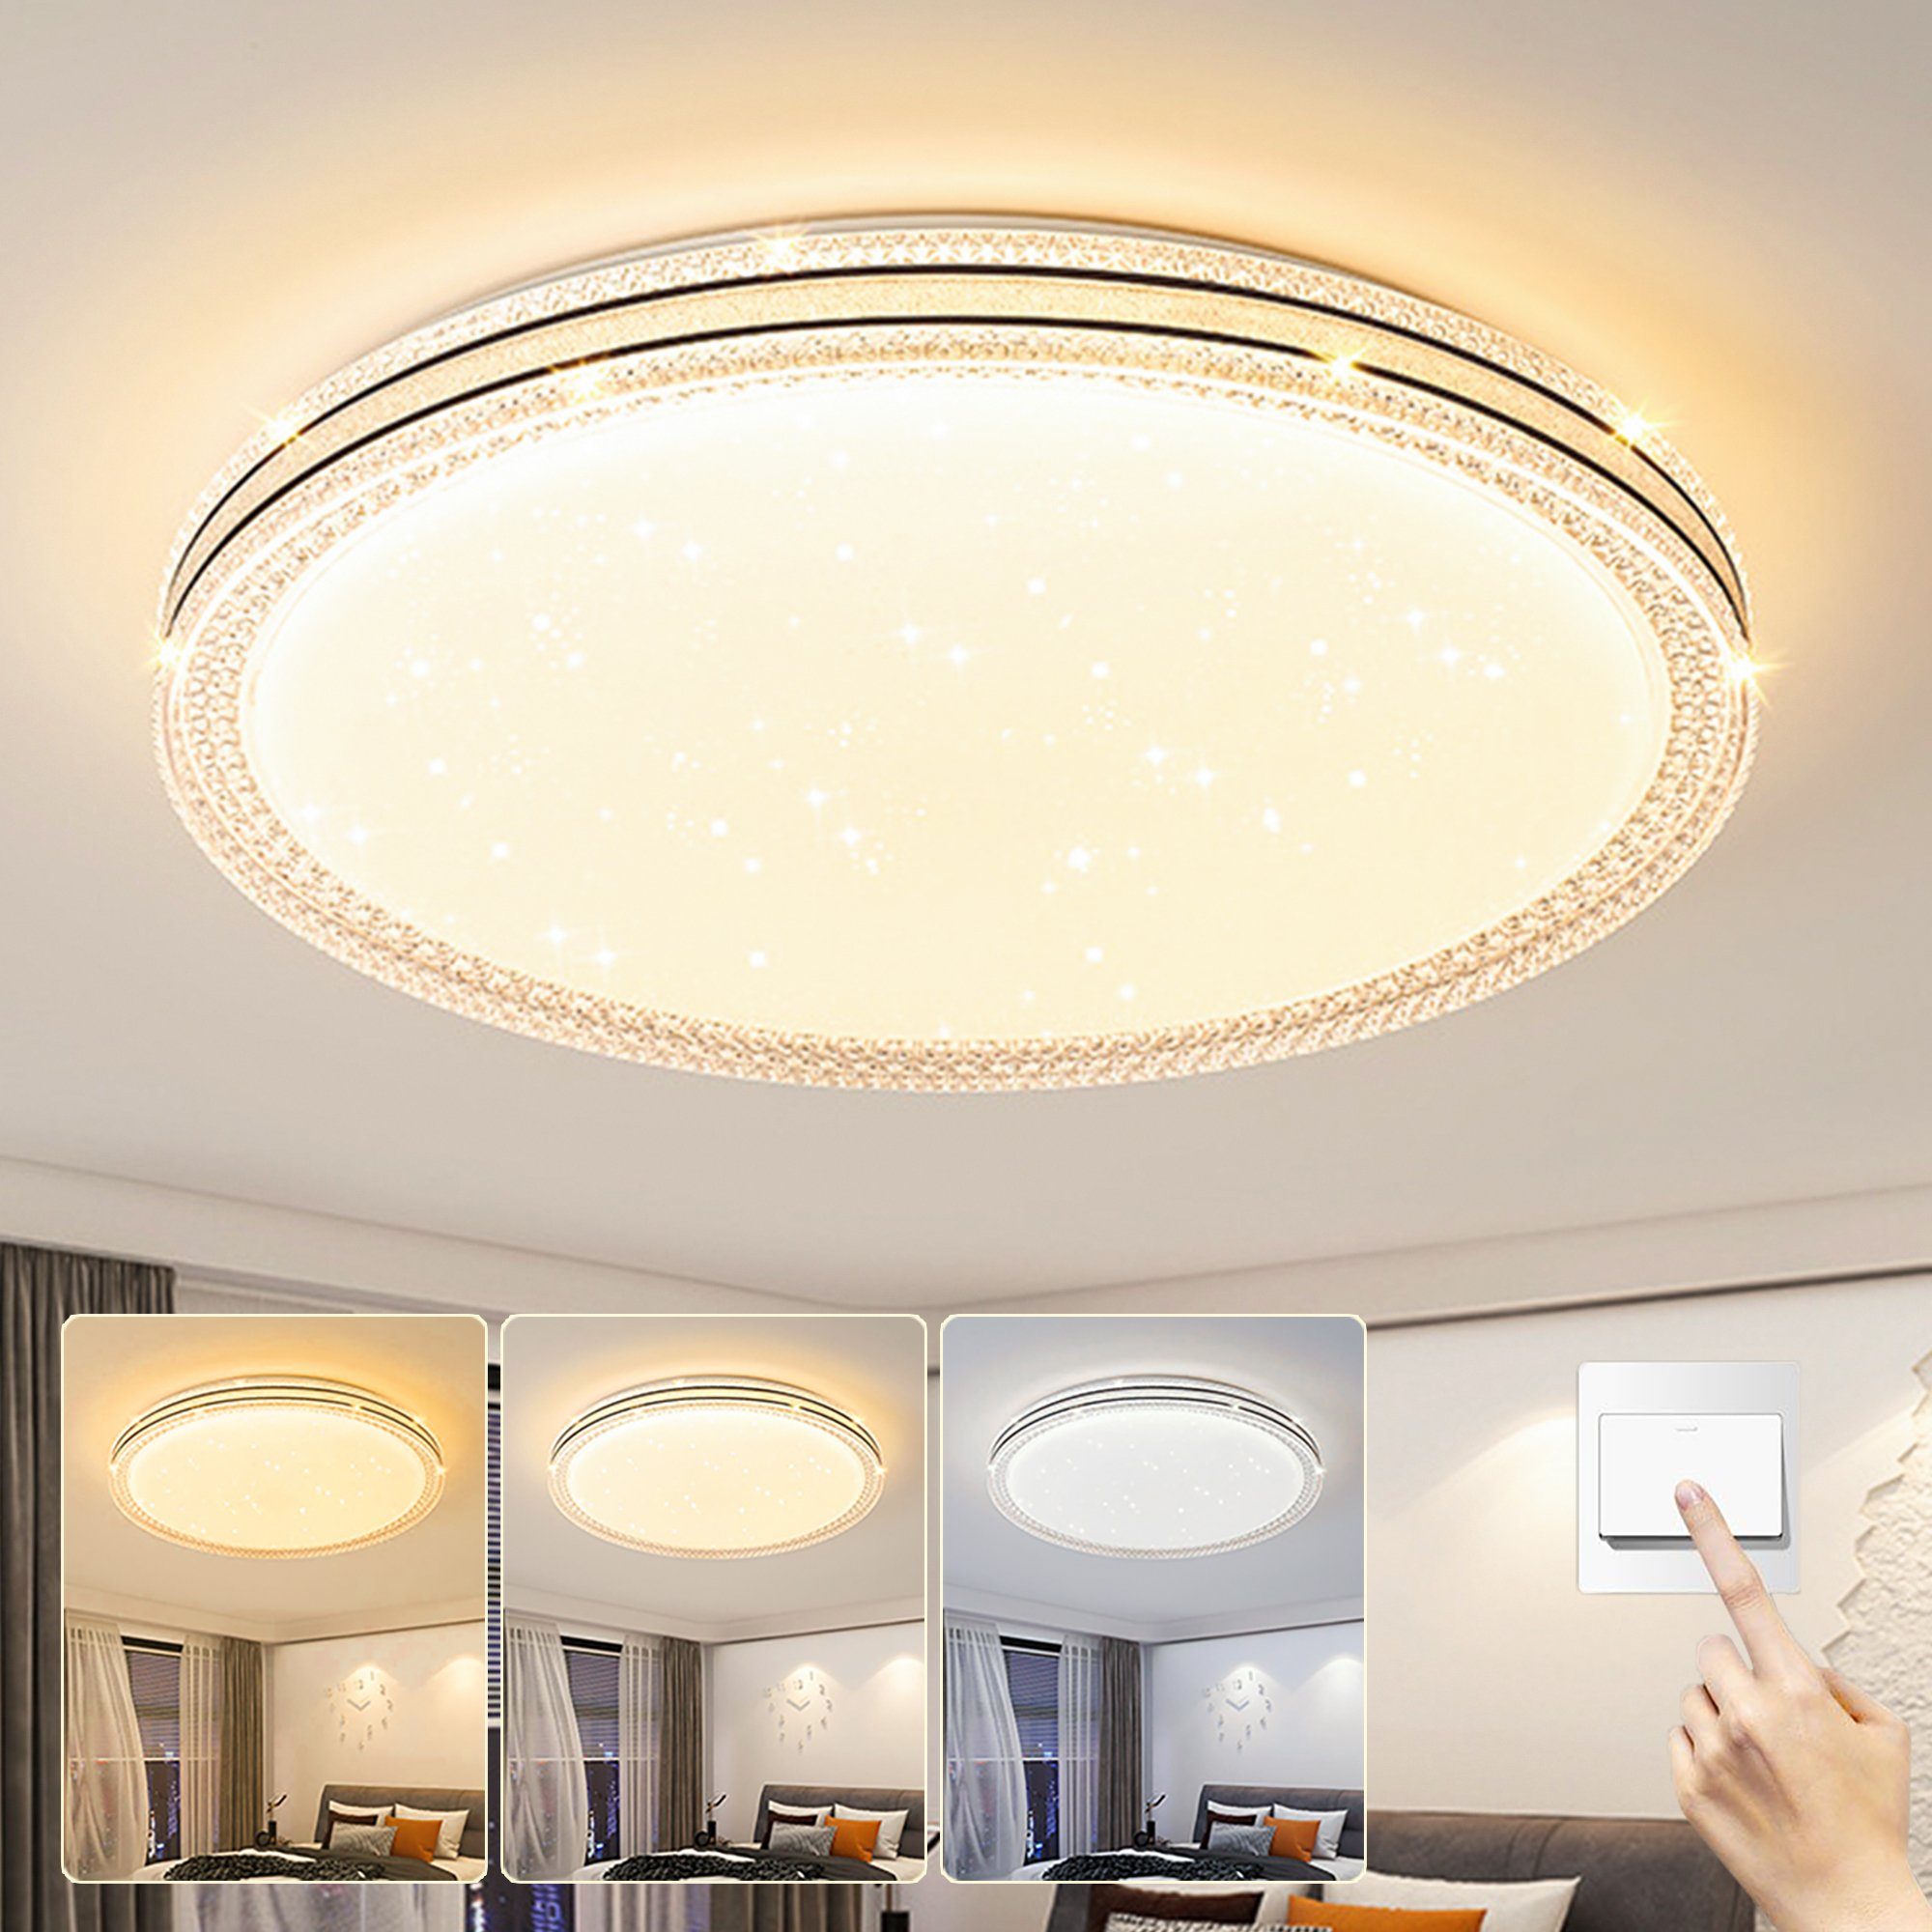 KUGI Deckenleuchten Deckenlampe LED Deckenleuchte Flach 2x36W,3000K-6000K,Ø35cm/Ø45cm, Badlampe Decke Küchenlampen für Bad/Schlafzimmer/Keller/Balkon